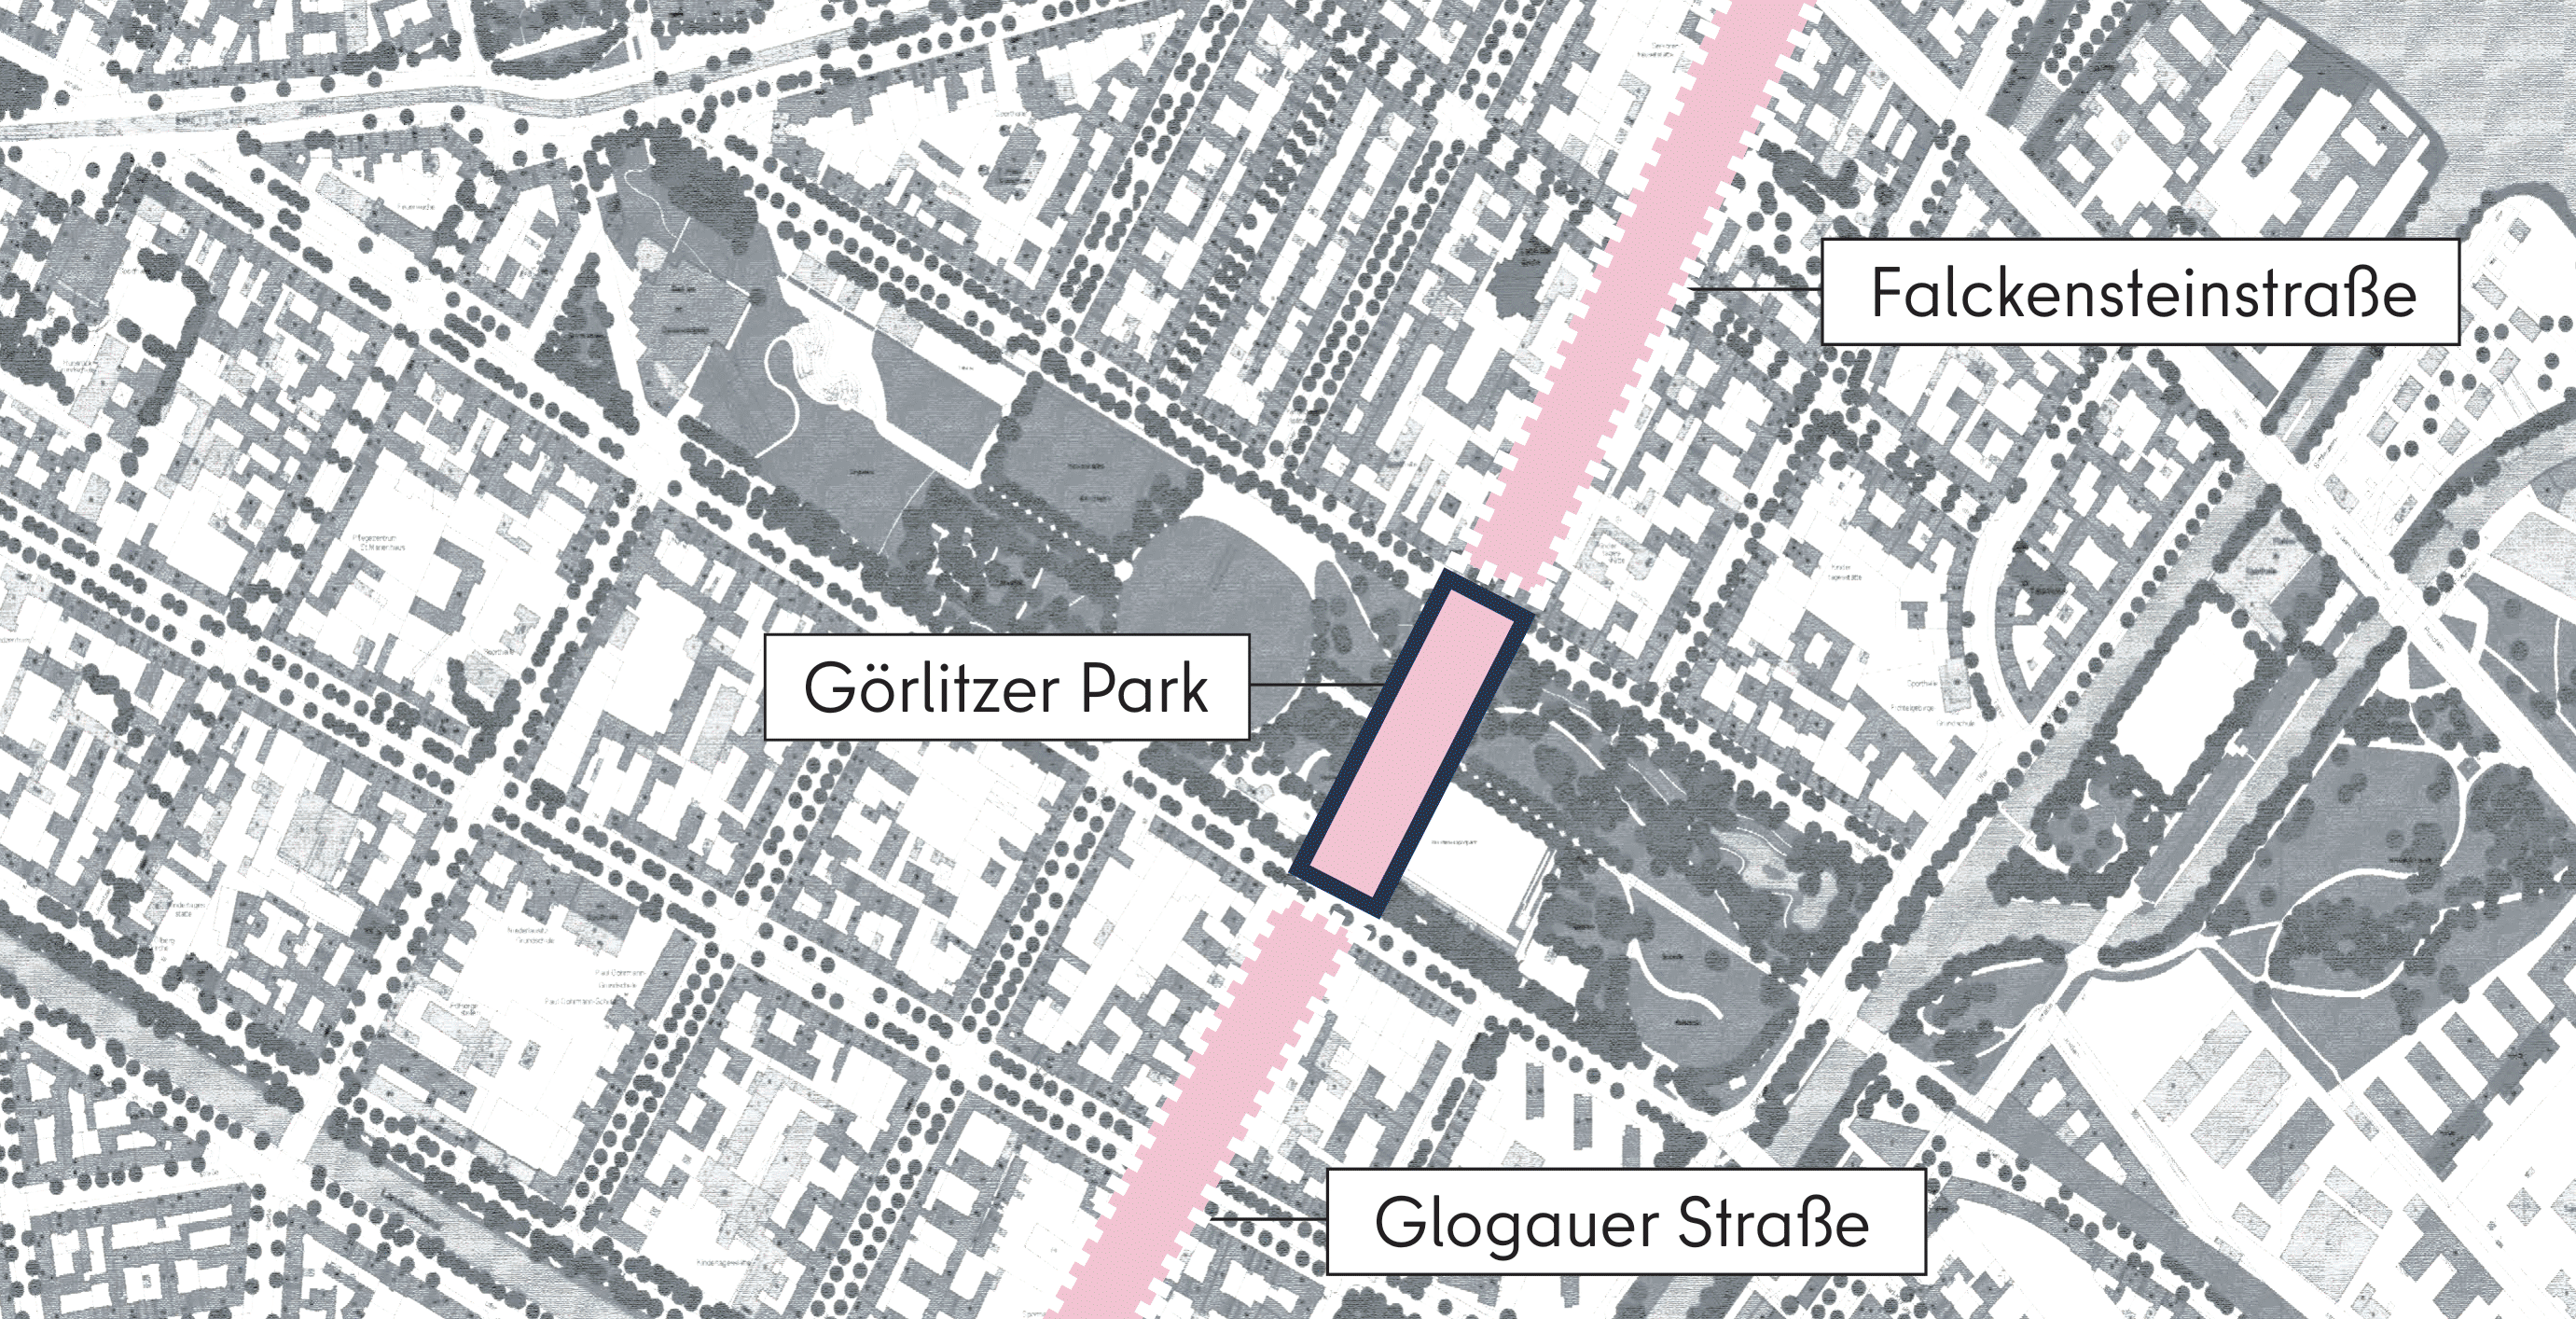 Dieses Bild zeigt eine grafische Darstellung des Abschnitts Görlitzer Park aus der Vogelperspektive